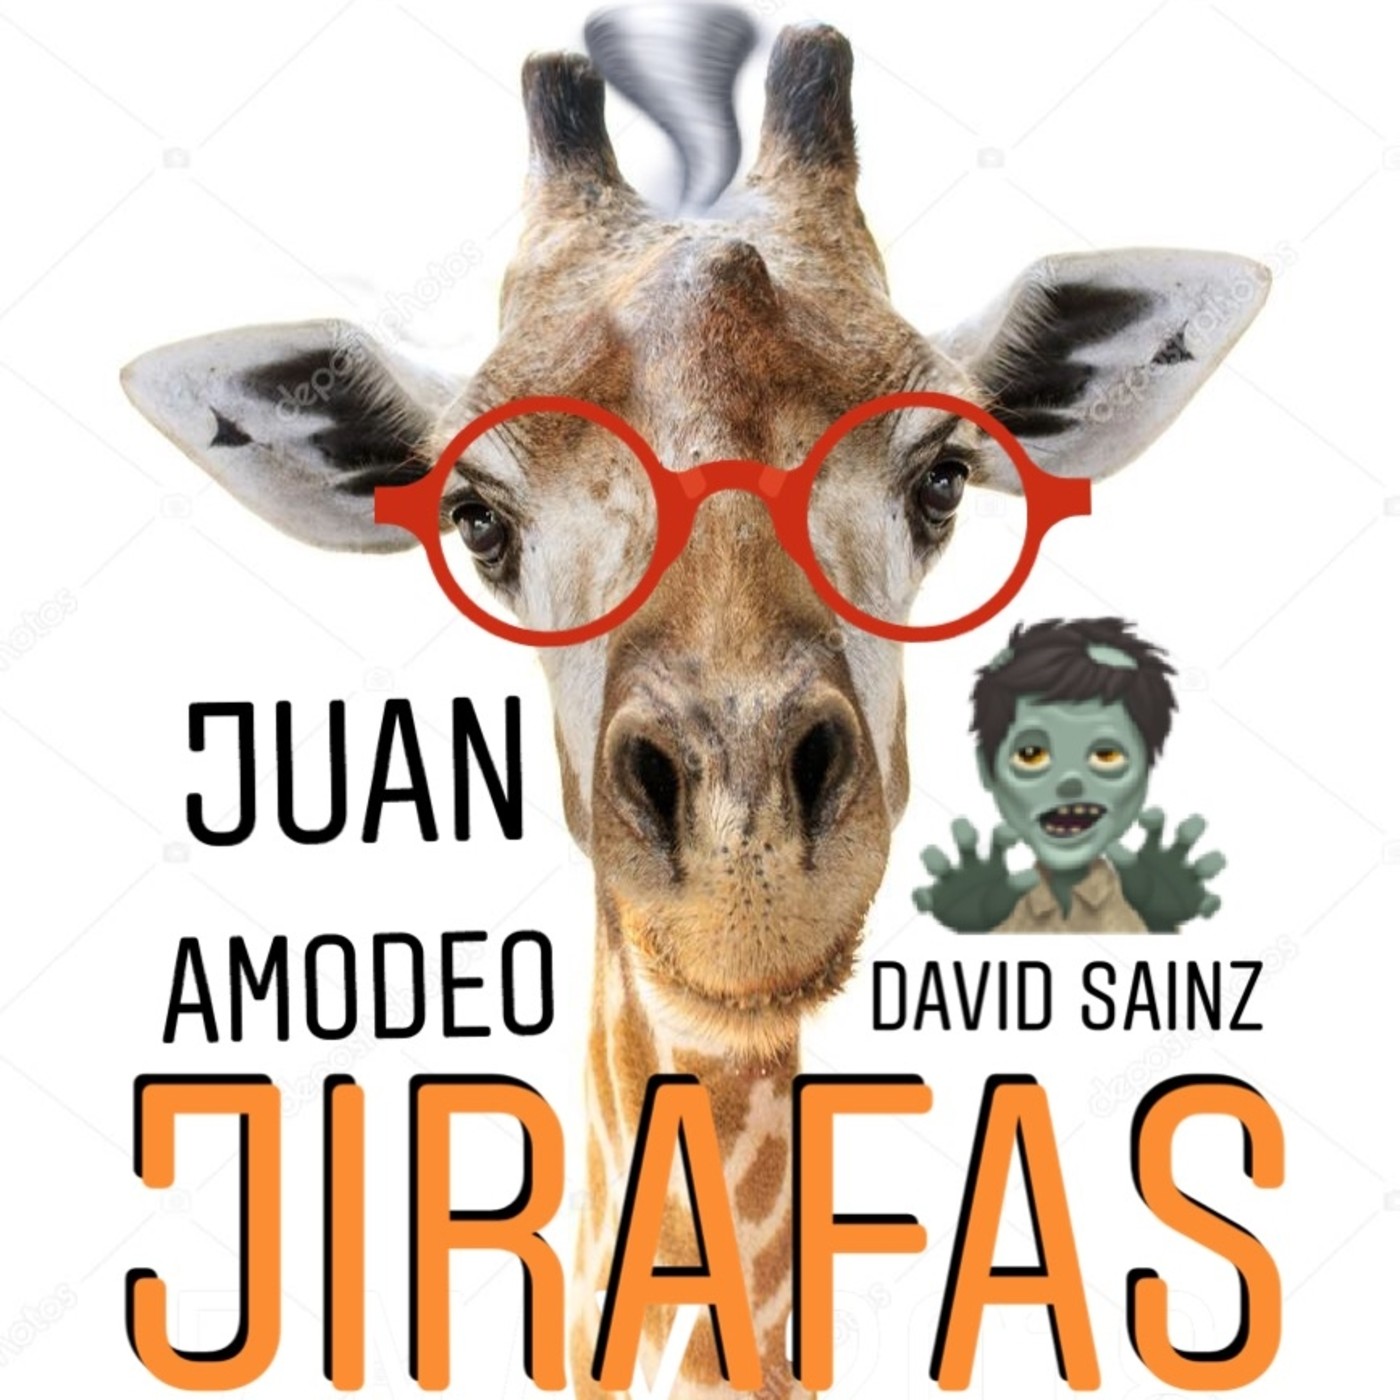 Jirafas con Juan Amodeo 2: Superhéroes, Doblajes y Psicomovidas